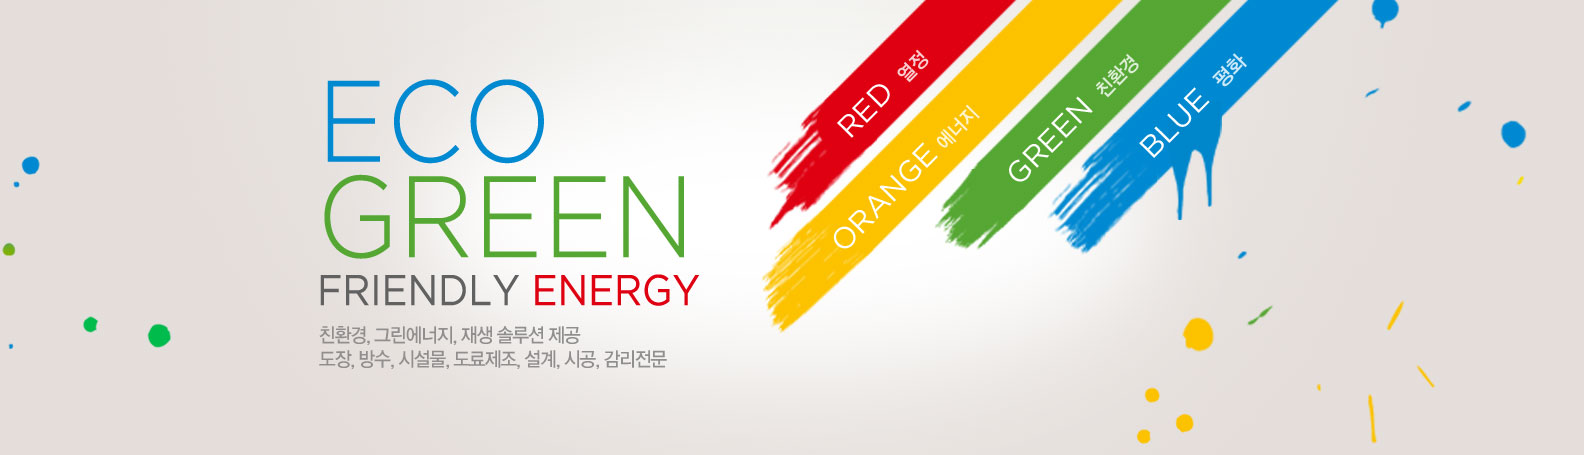 ECO Green Friendly Energy 친환경, 그린에너지, 재생 솔루션 제공, 도장, 방수, 시설물, 도료제조, 설계, 시공, 감리전문